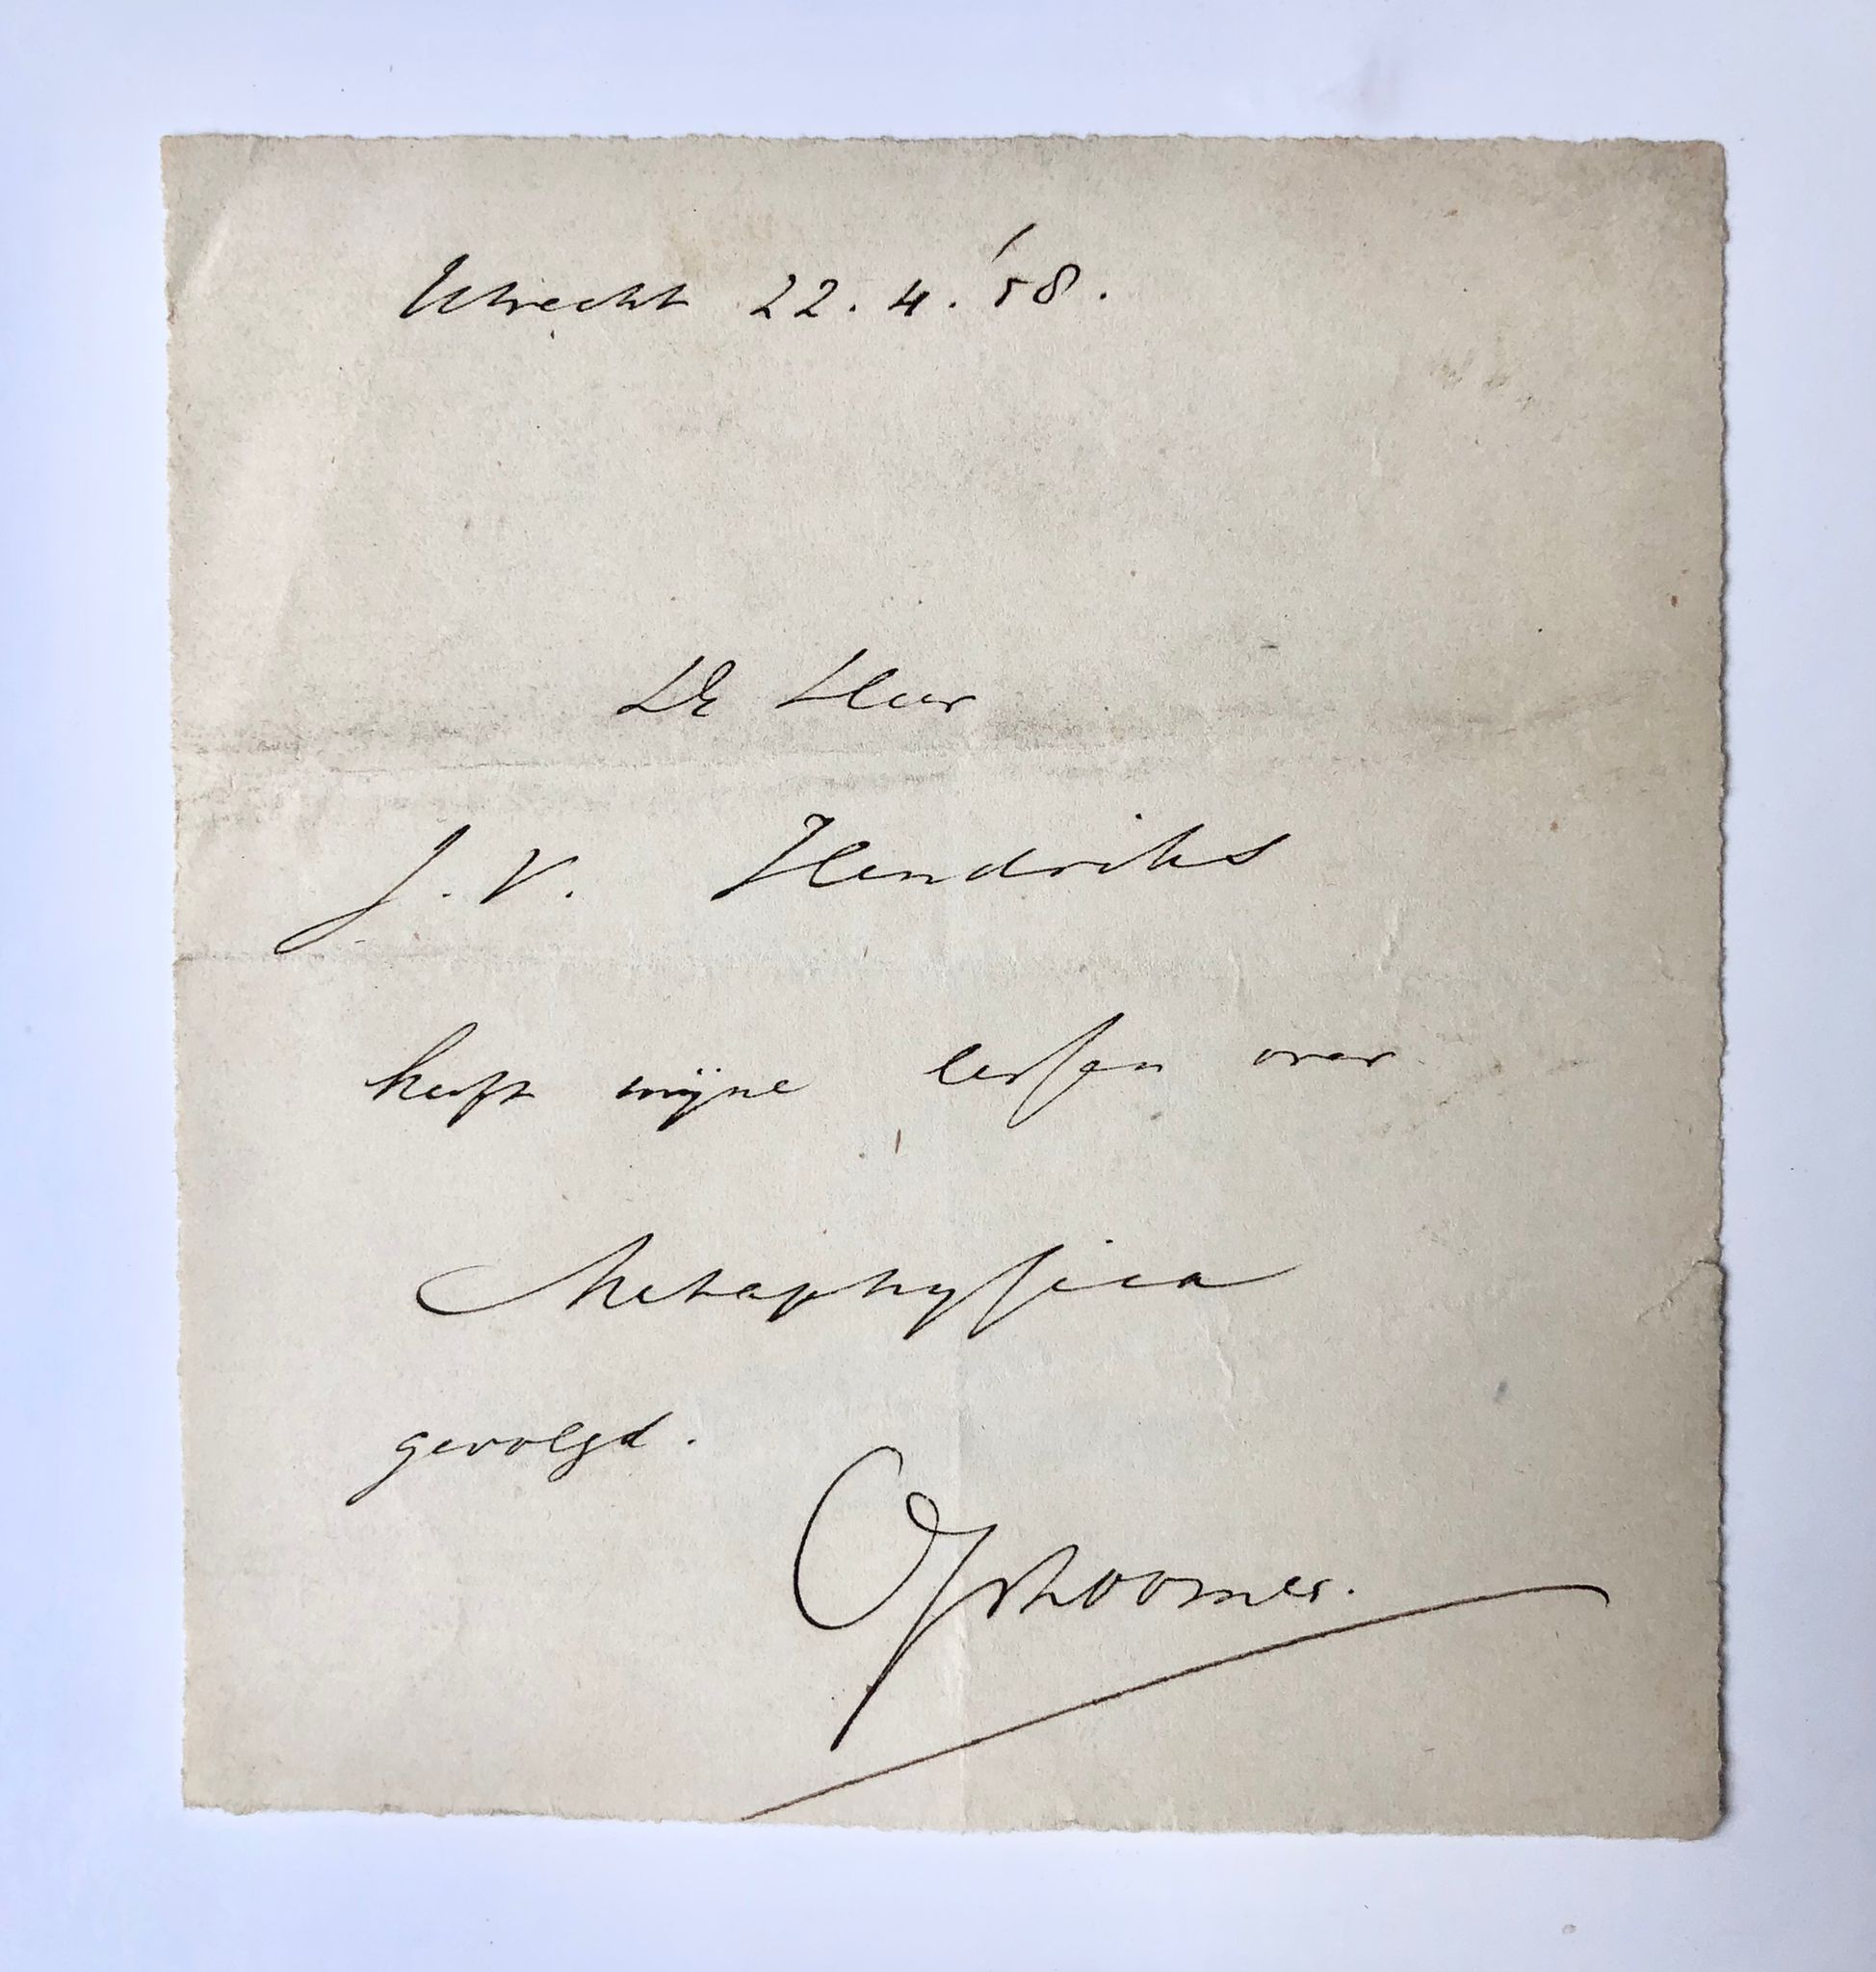  - [Manuscript, Opzoomer, 1858] Verklaring van Opzoomer dat J.V. Hendriks zijn lessen metaphysica heeft gevolgd, Utrecht 1858, manuscript, 1 p.